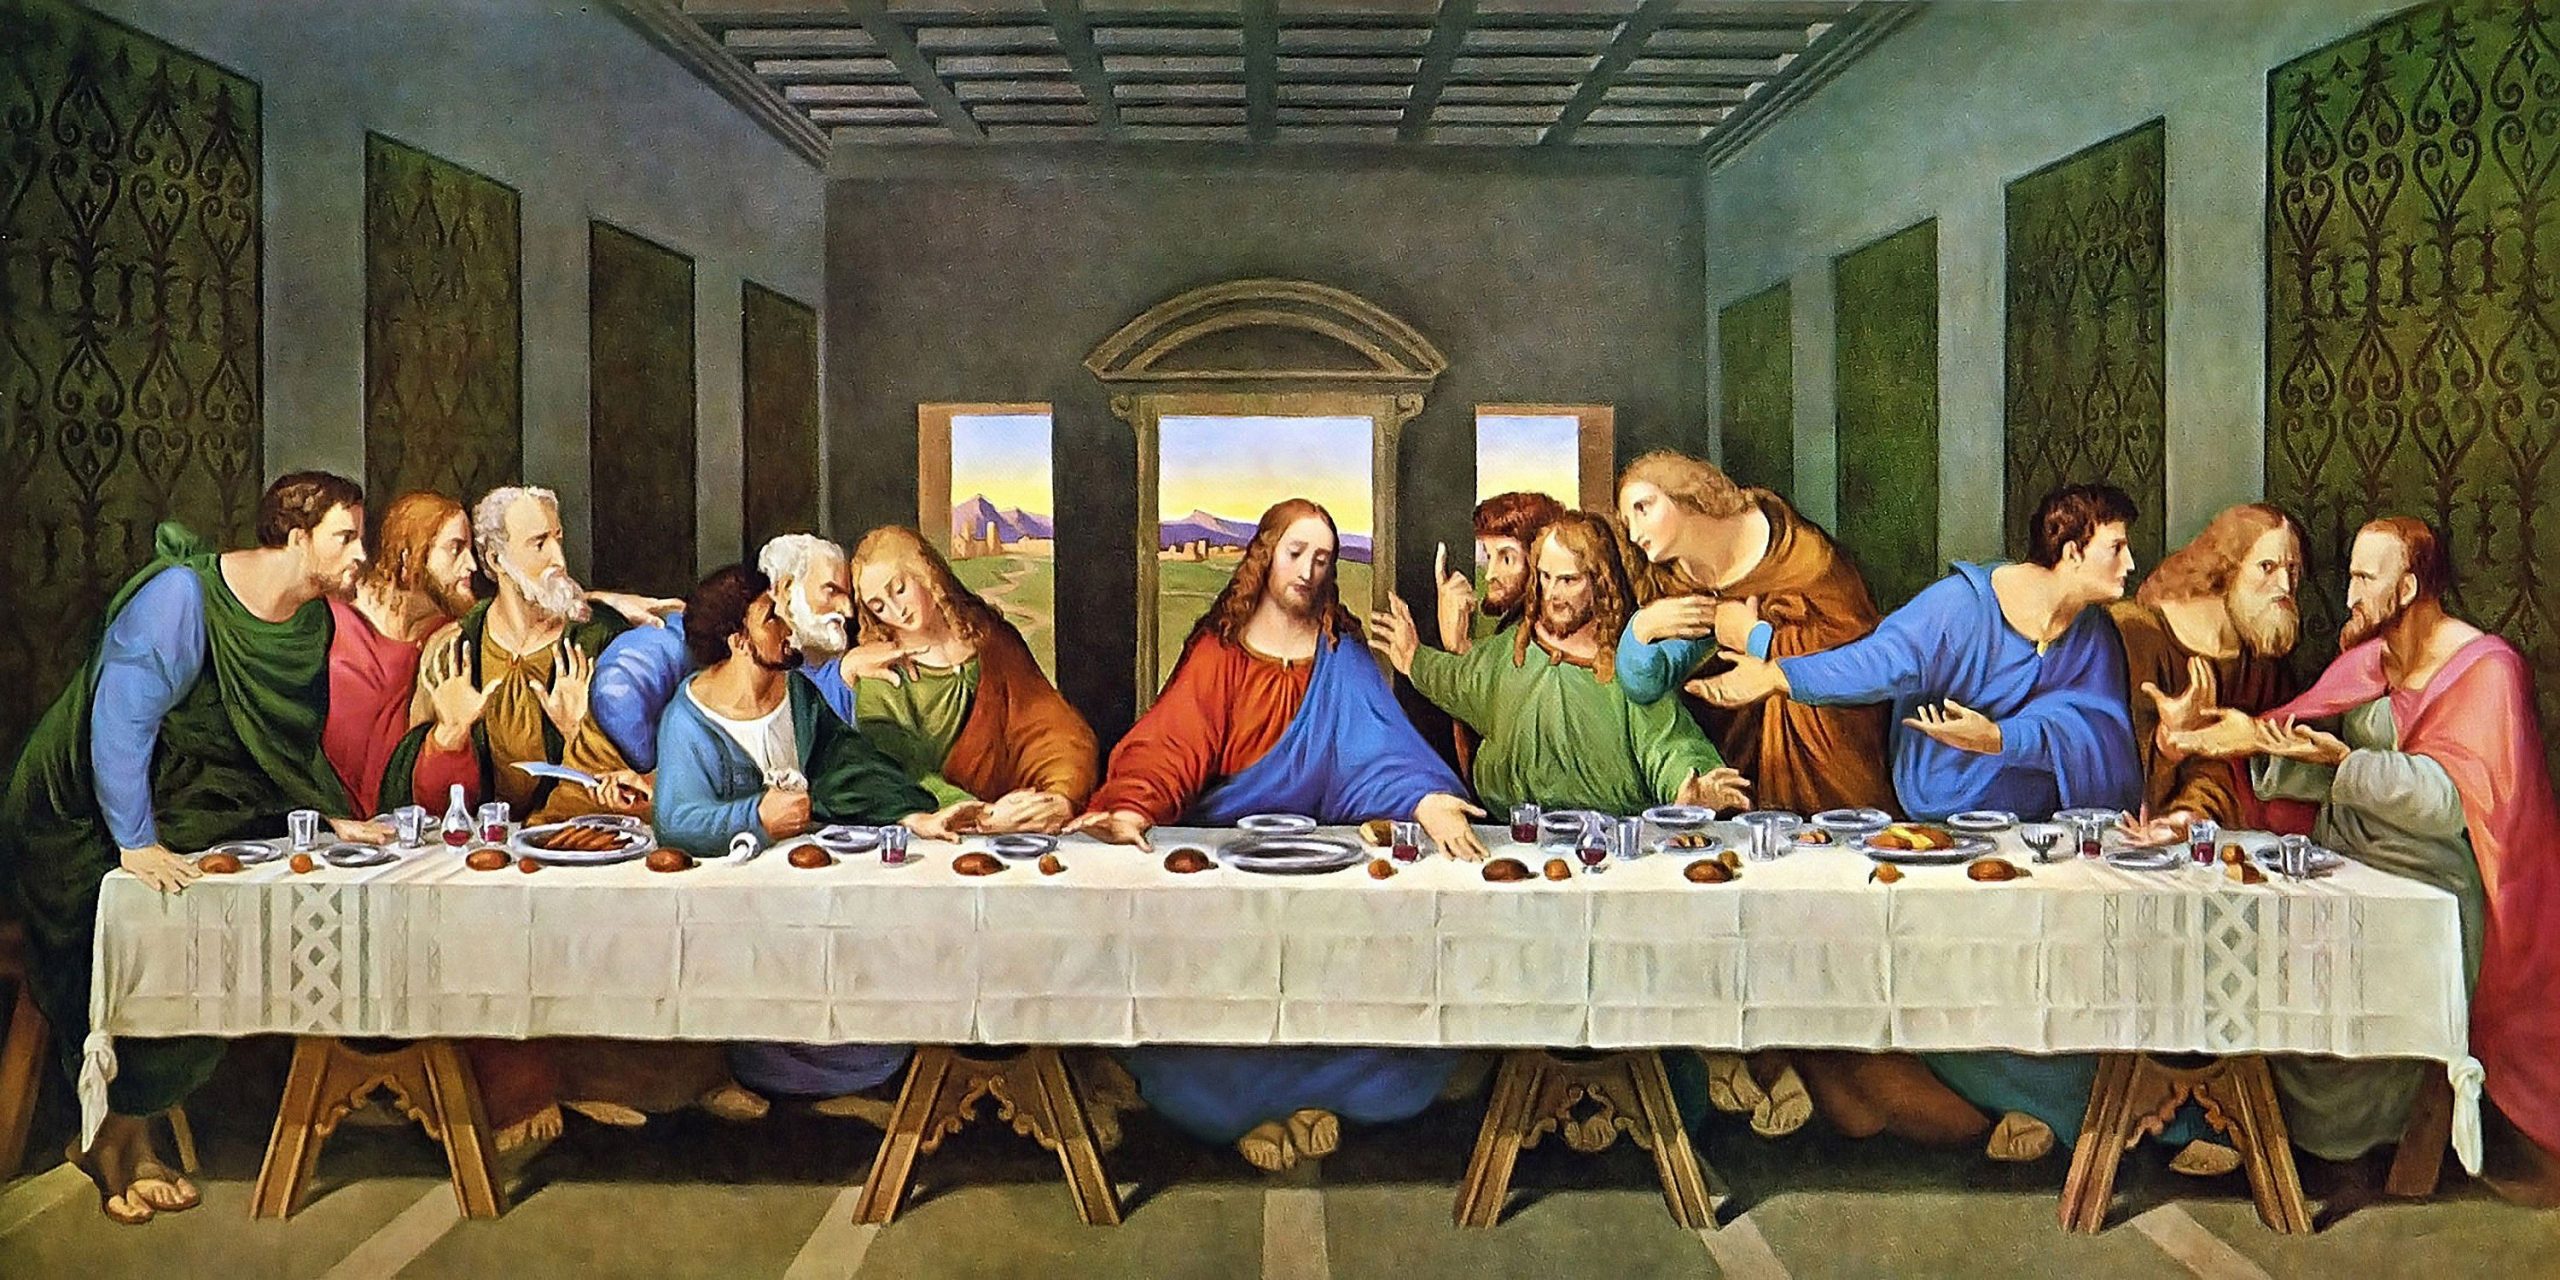 The Last Supper (Leonardo da Vinci, 1495-1498)